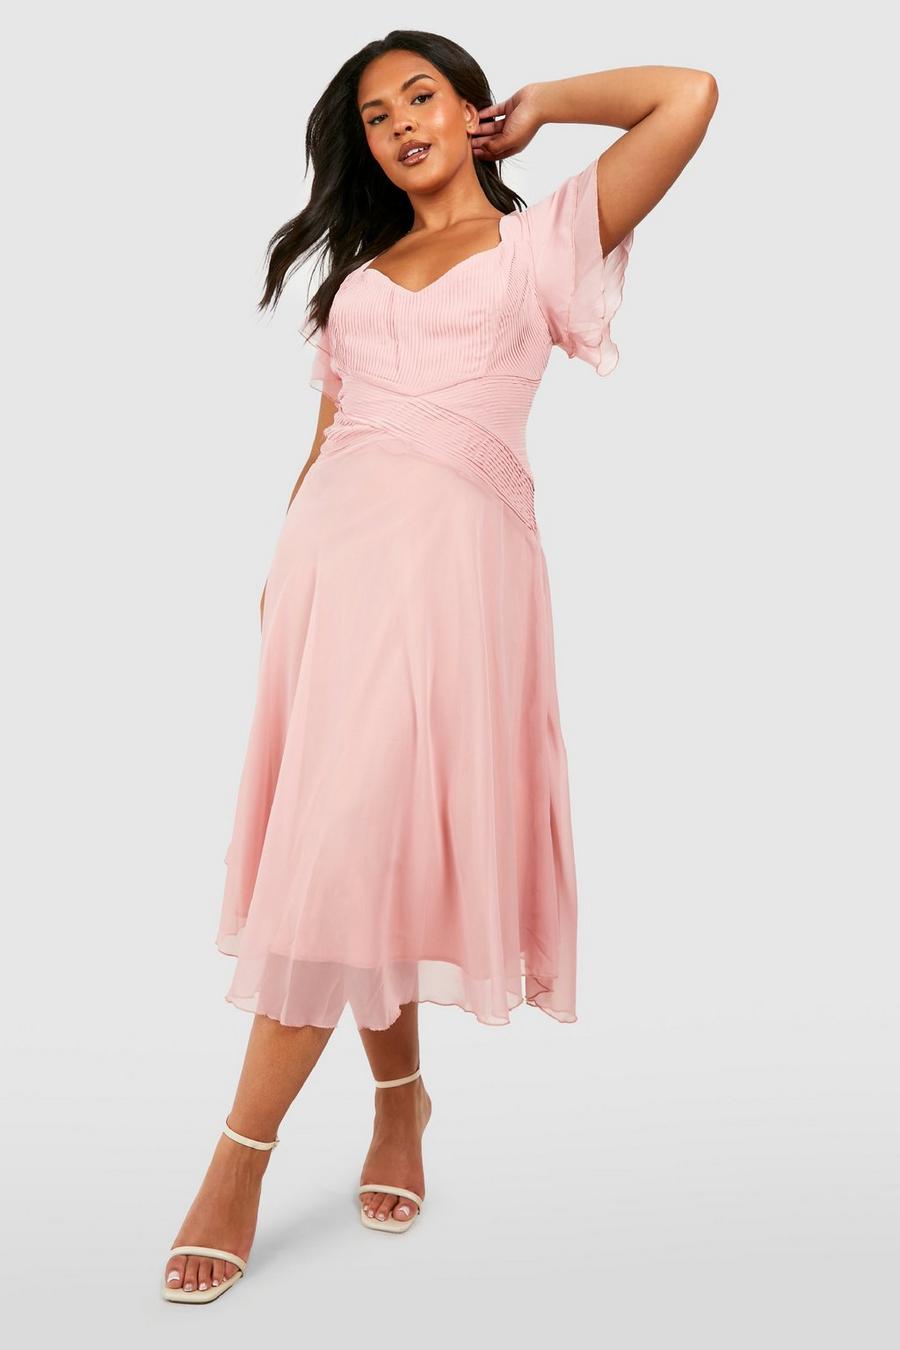 סמוק rosa שמלת שיפון מידי לאירועים עם שרוולי מלאך, מידות גדולות image number 1